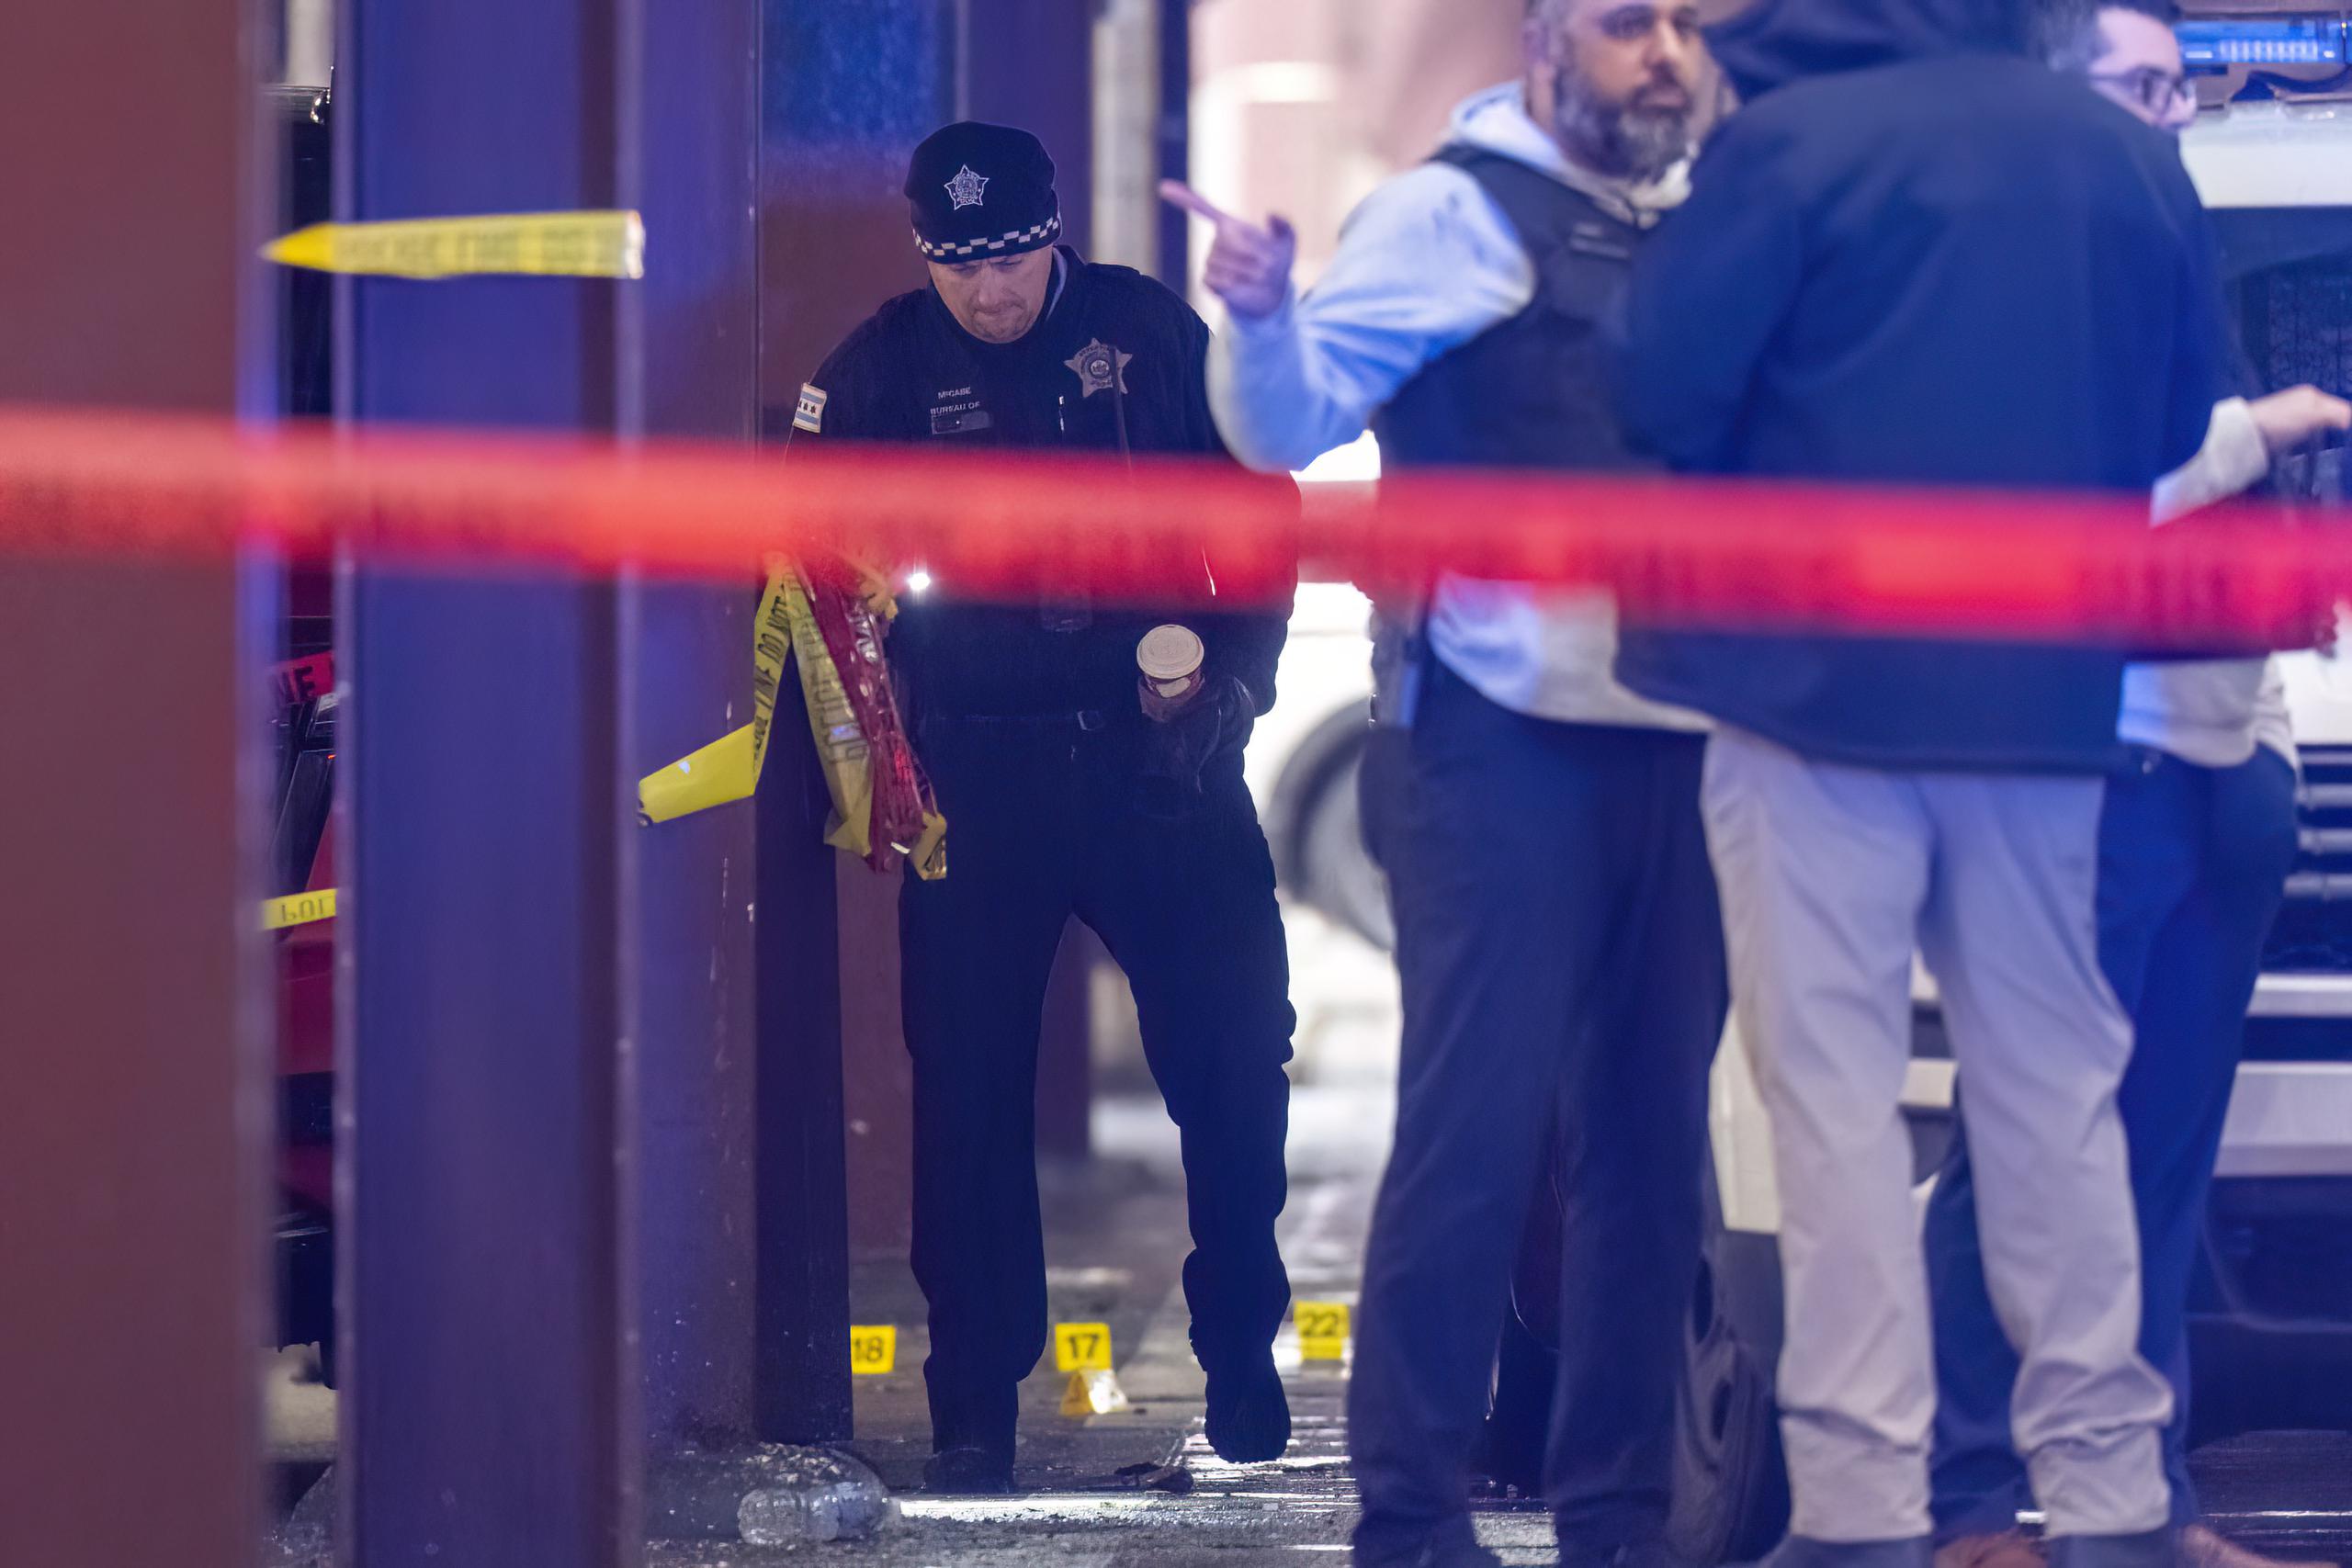 El subjefe de la policía de Chicago, Jon Hein, calificó el tiroteo como un “acto de violencia sin sentido”.